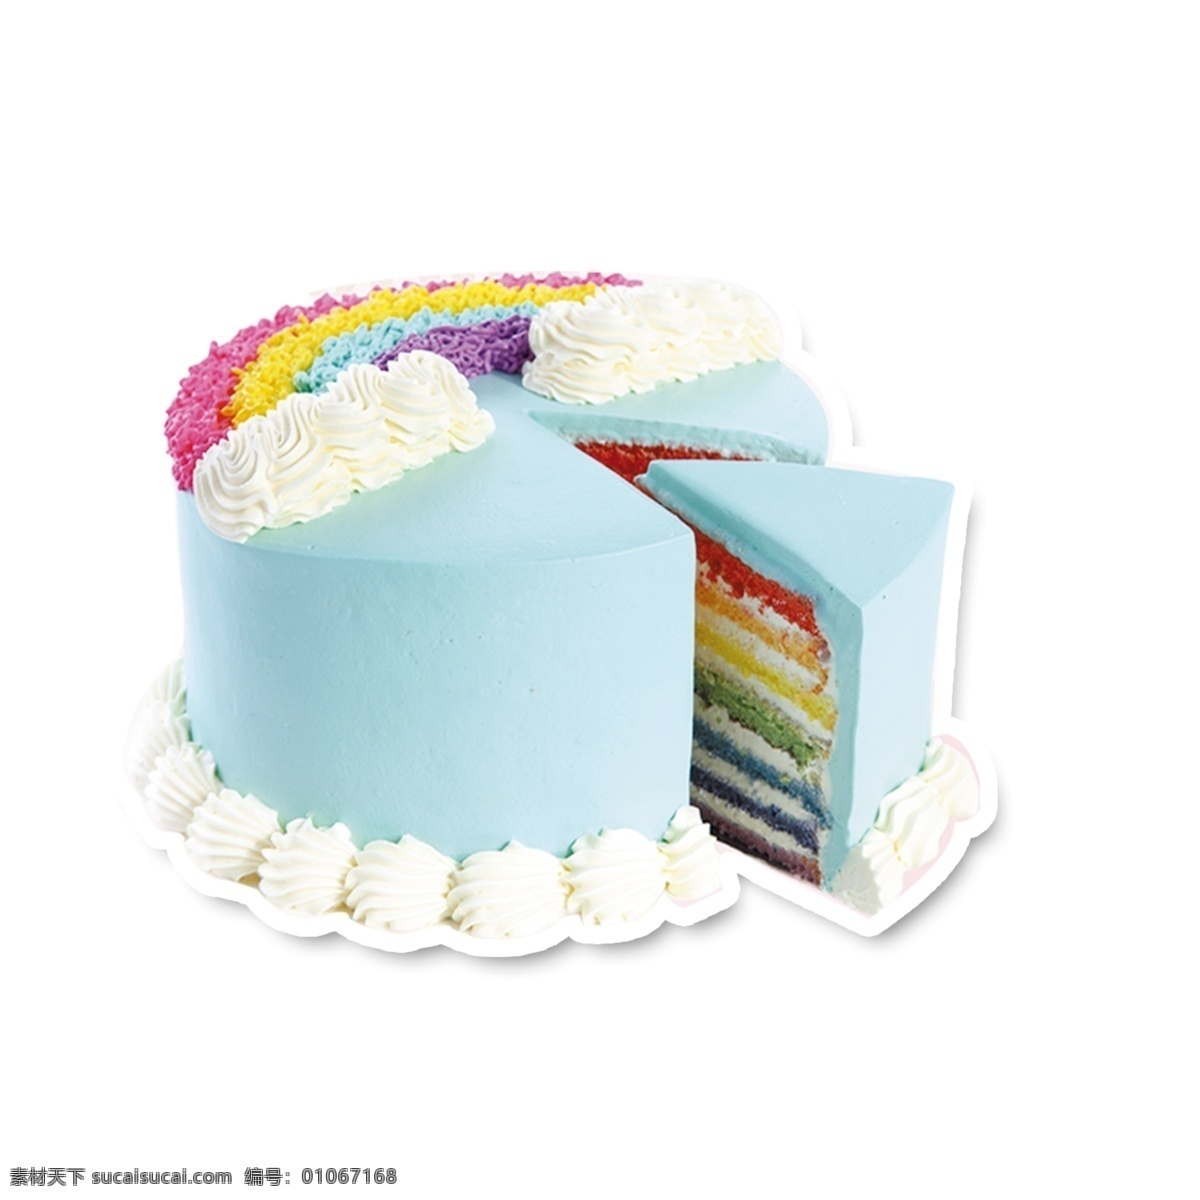 彩虹蛋糕 蛋糕 蓝色蛋糕 白色